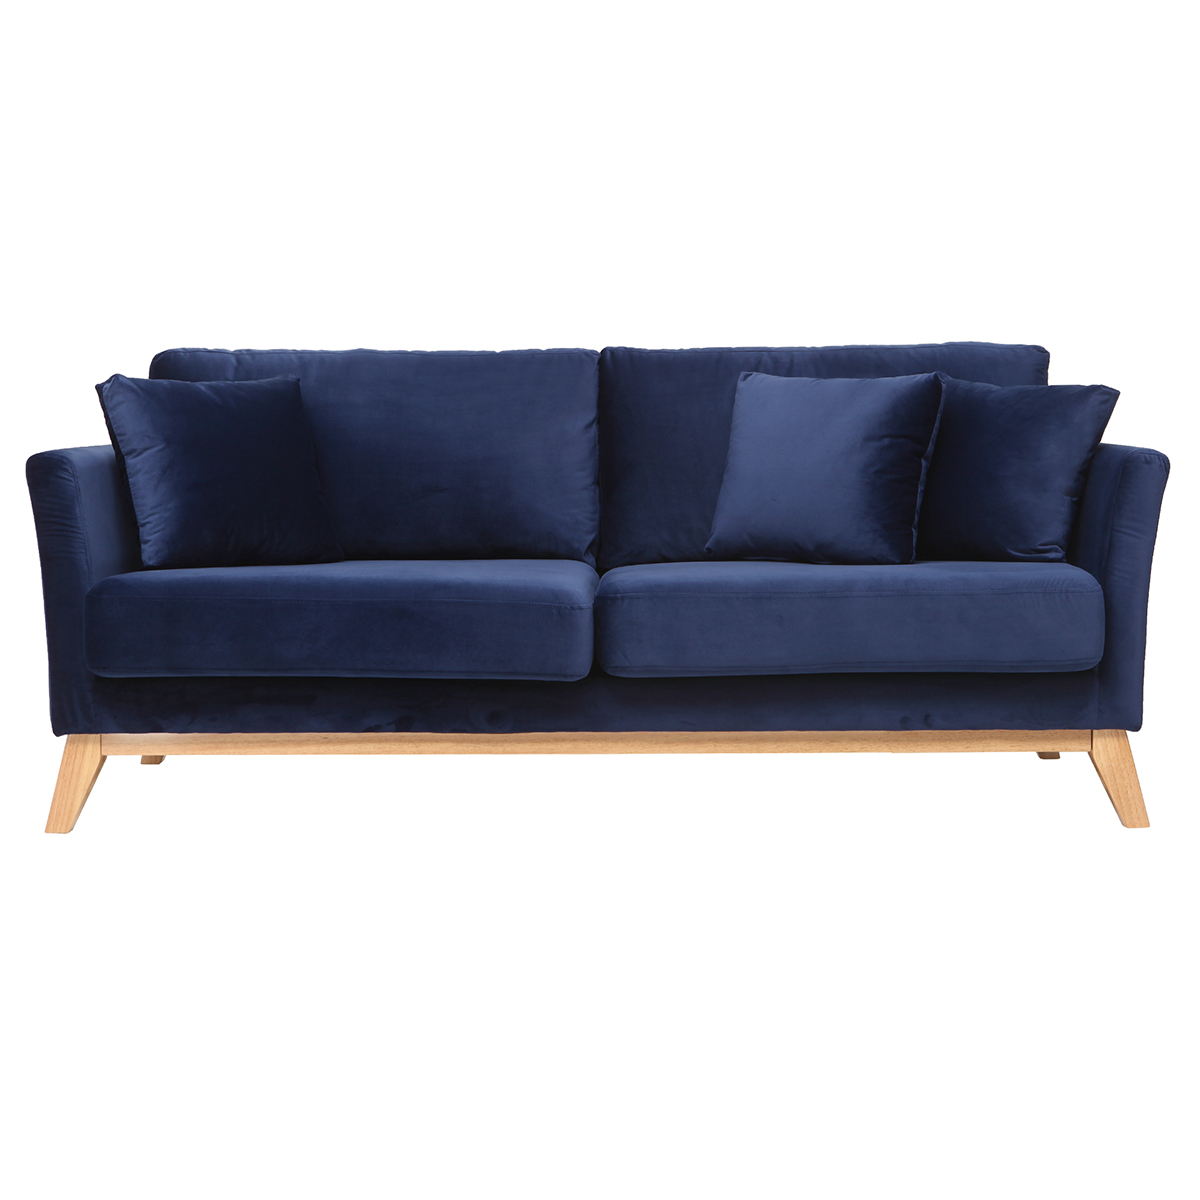 Canapé scandinave déhoussable 3 places en tissu velours bleu nuit et bois clair OSLO vue1